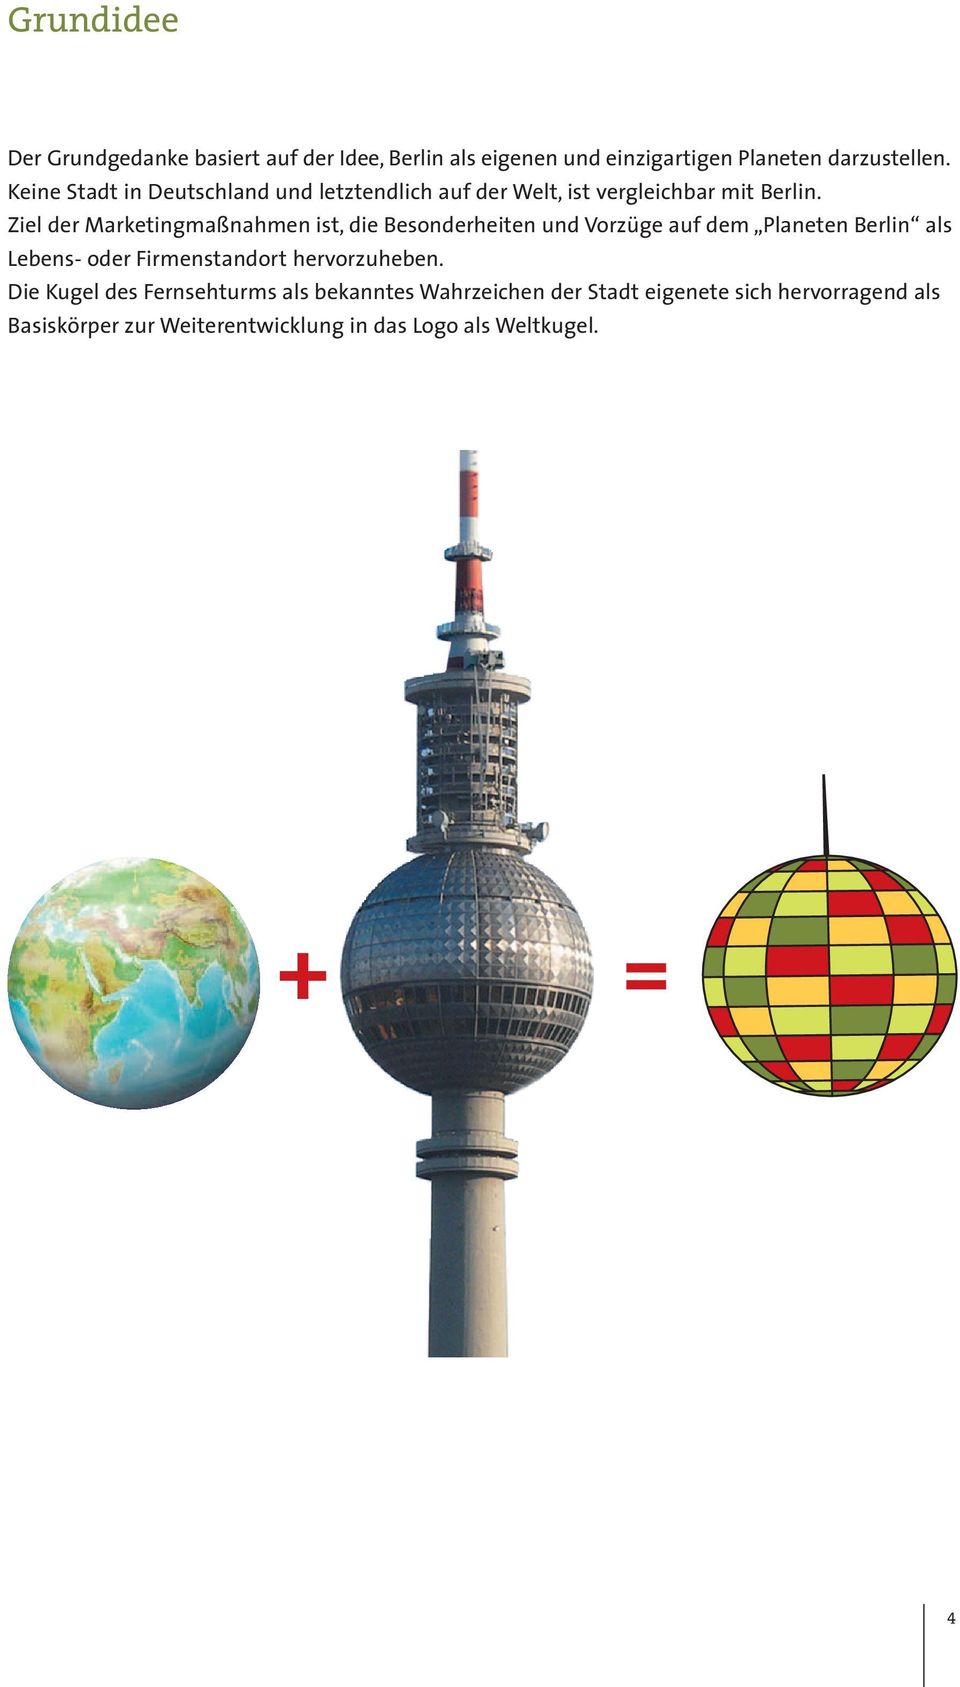 Ziel der Marketingmaßnahmen ist, die Besonderheiten und Vorzüge auf dem Planeten Berlin als Lebens- oder Firmenstandort